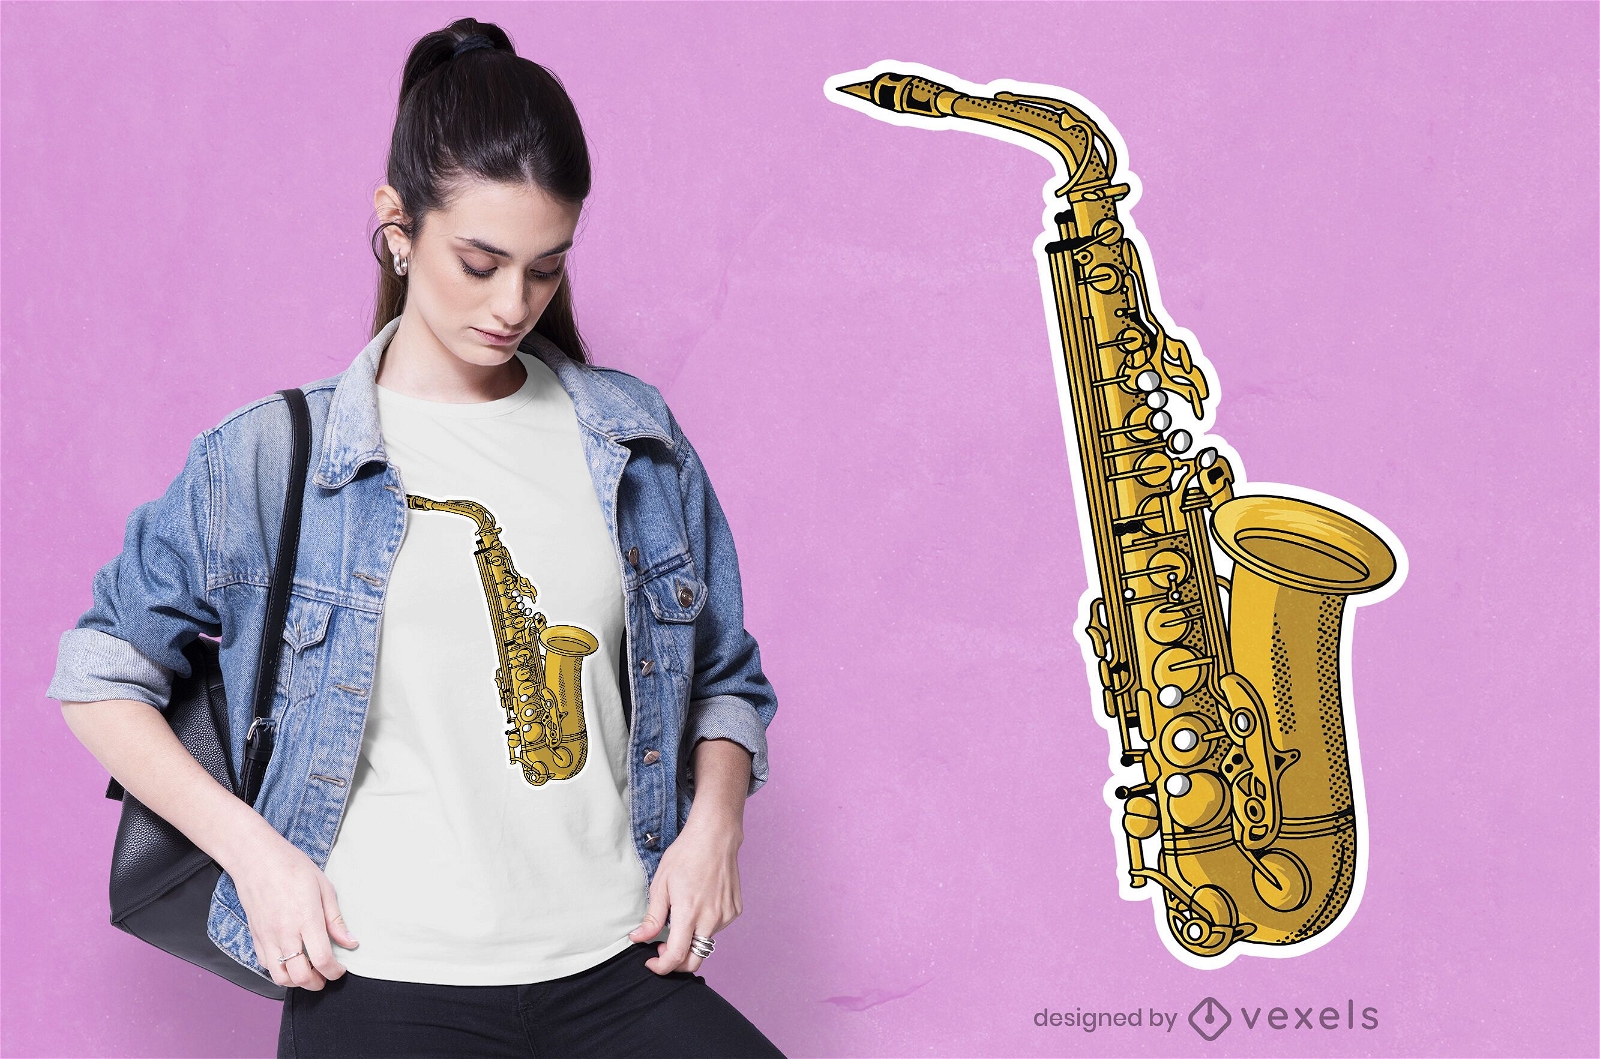 Dise?o de camiseta de instrumento de saxof?n.